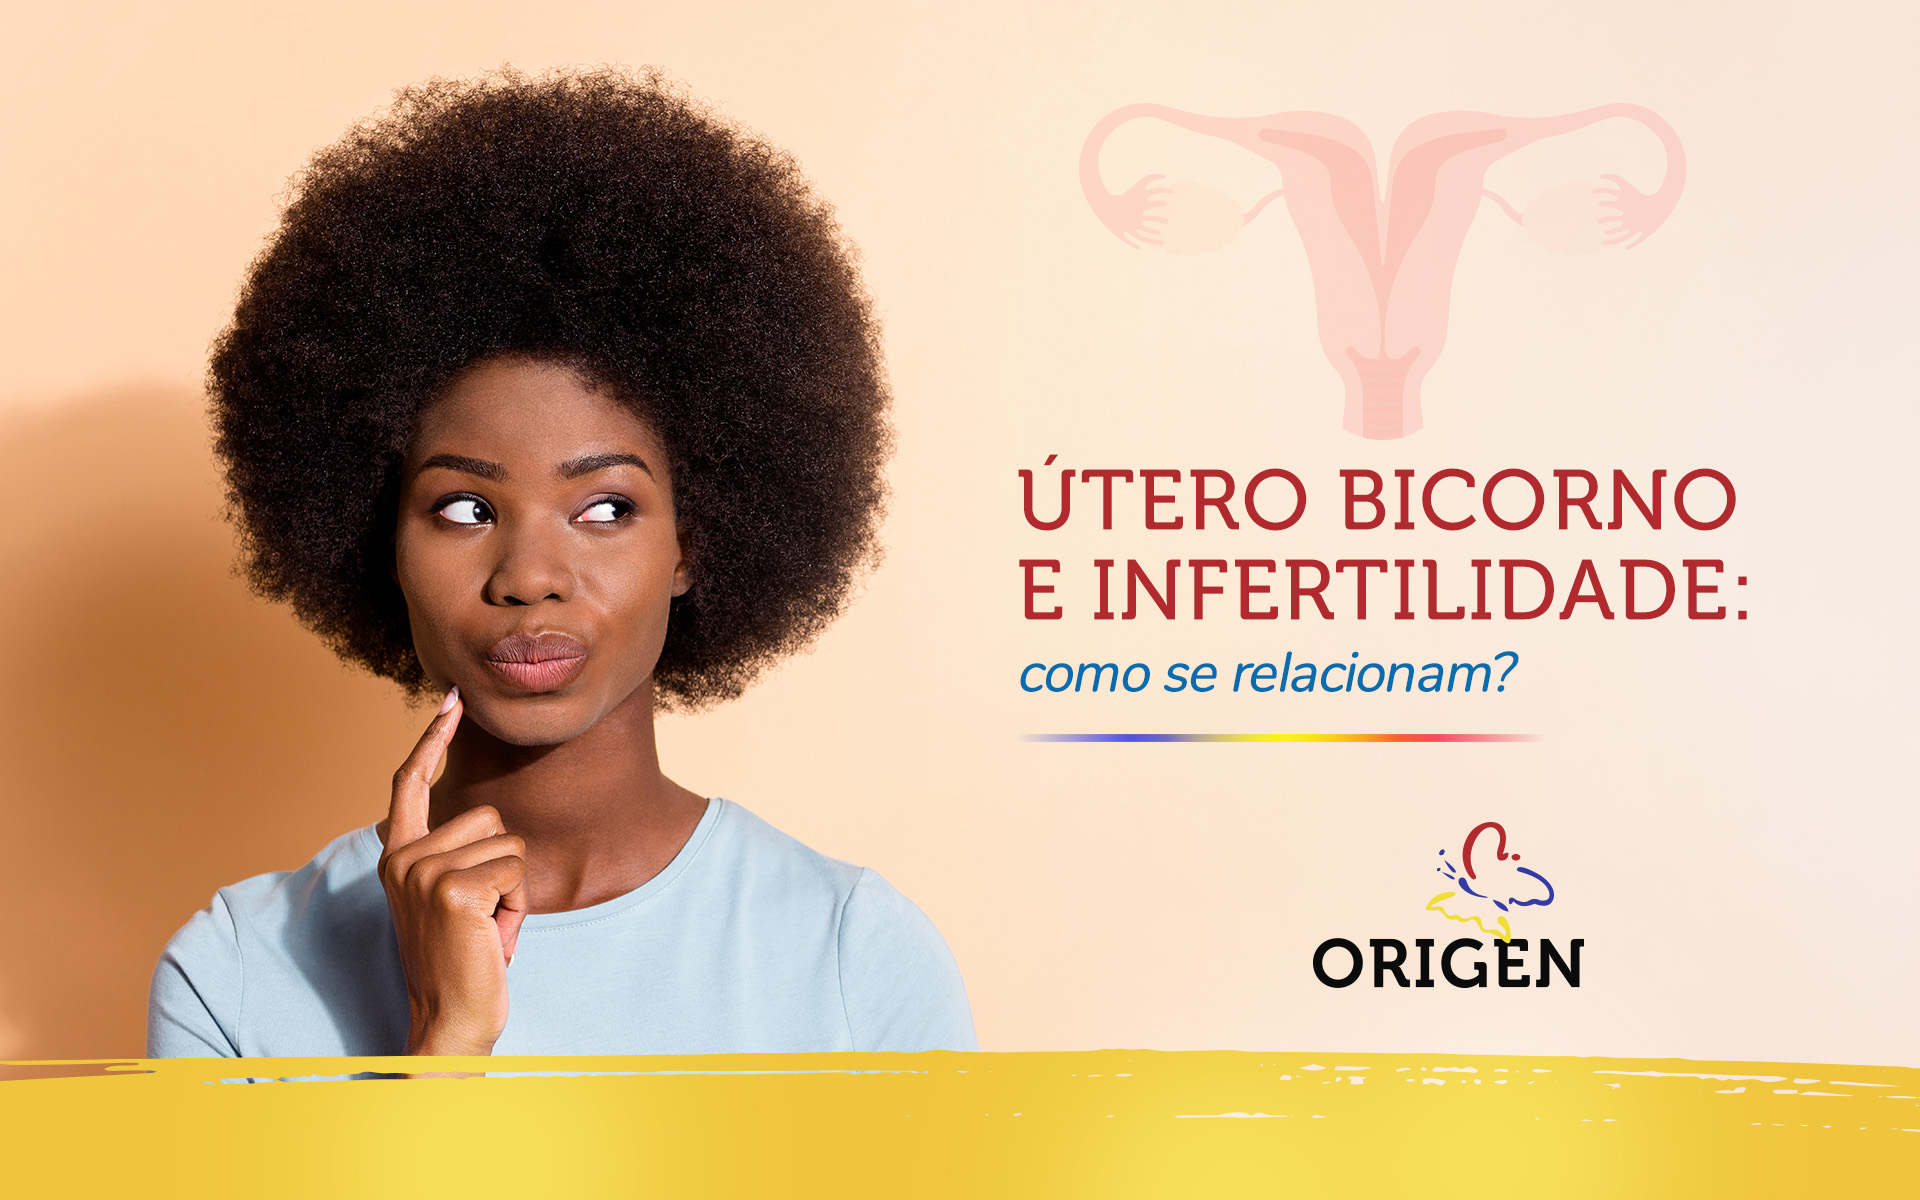 Útero bicorno e infertilidade: como se relacionam?